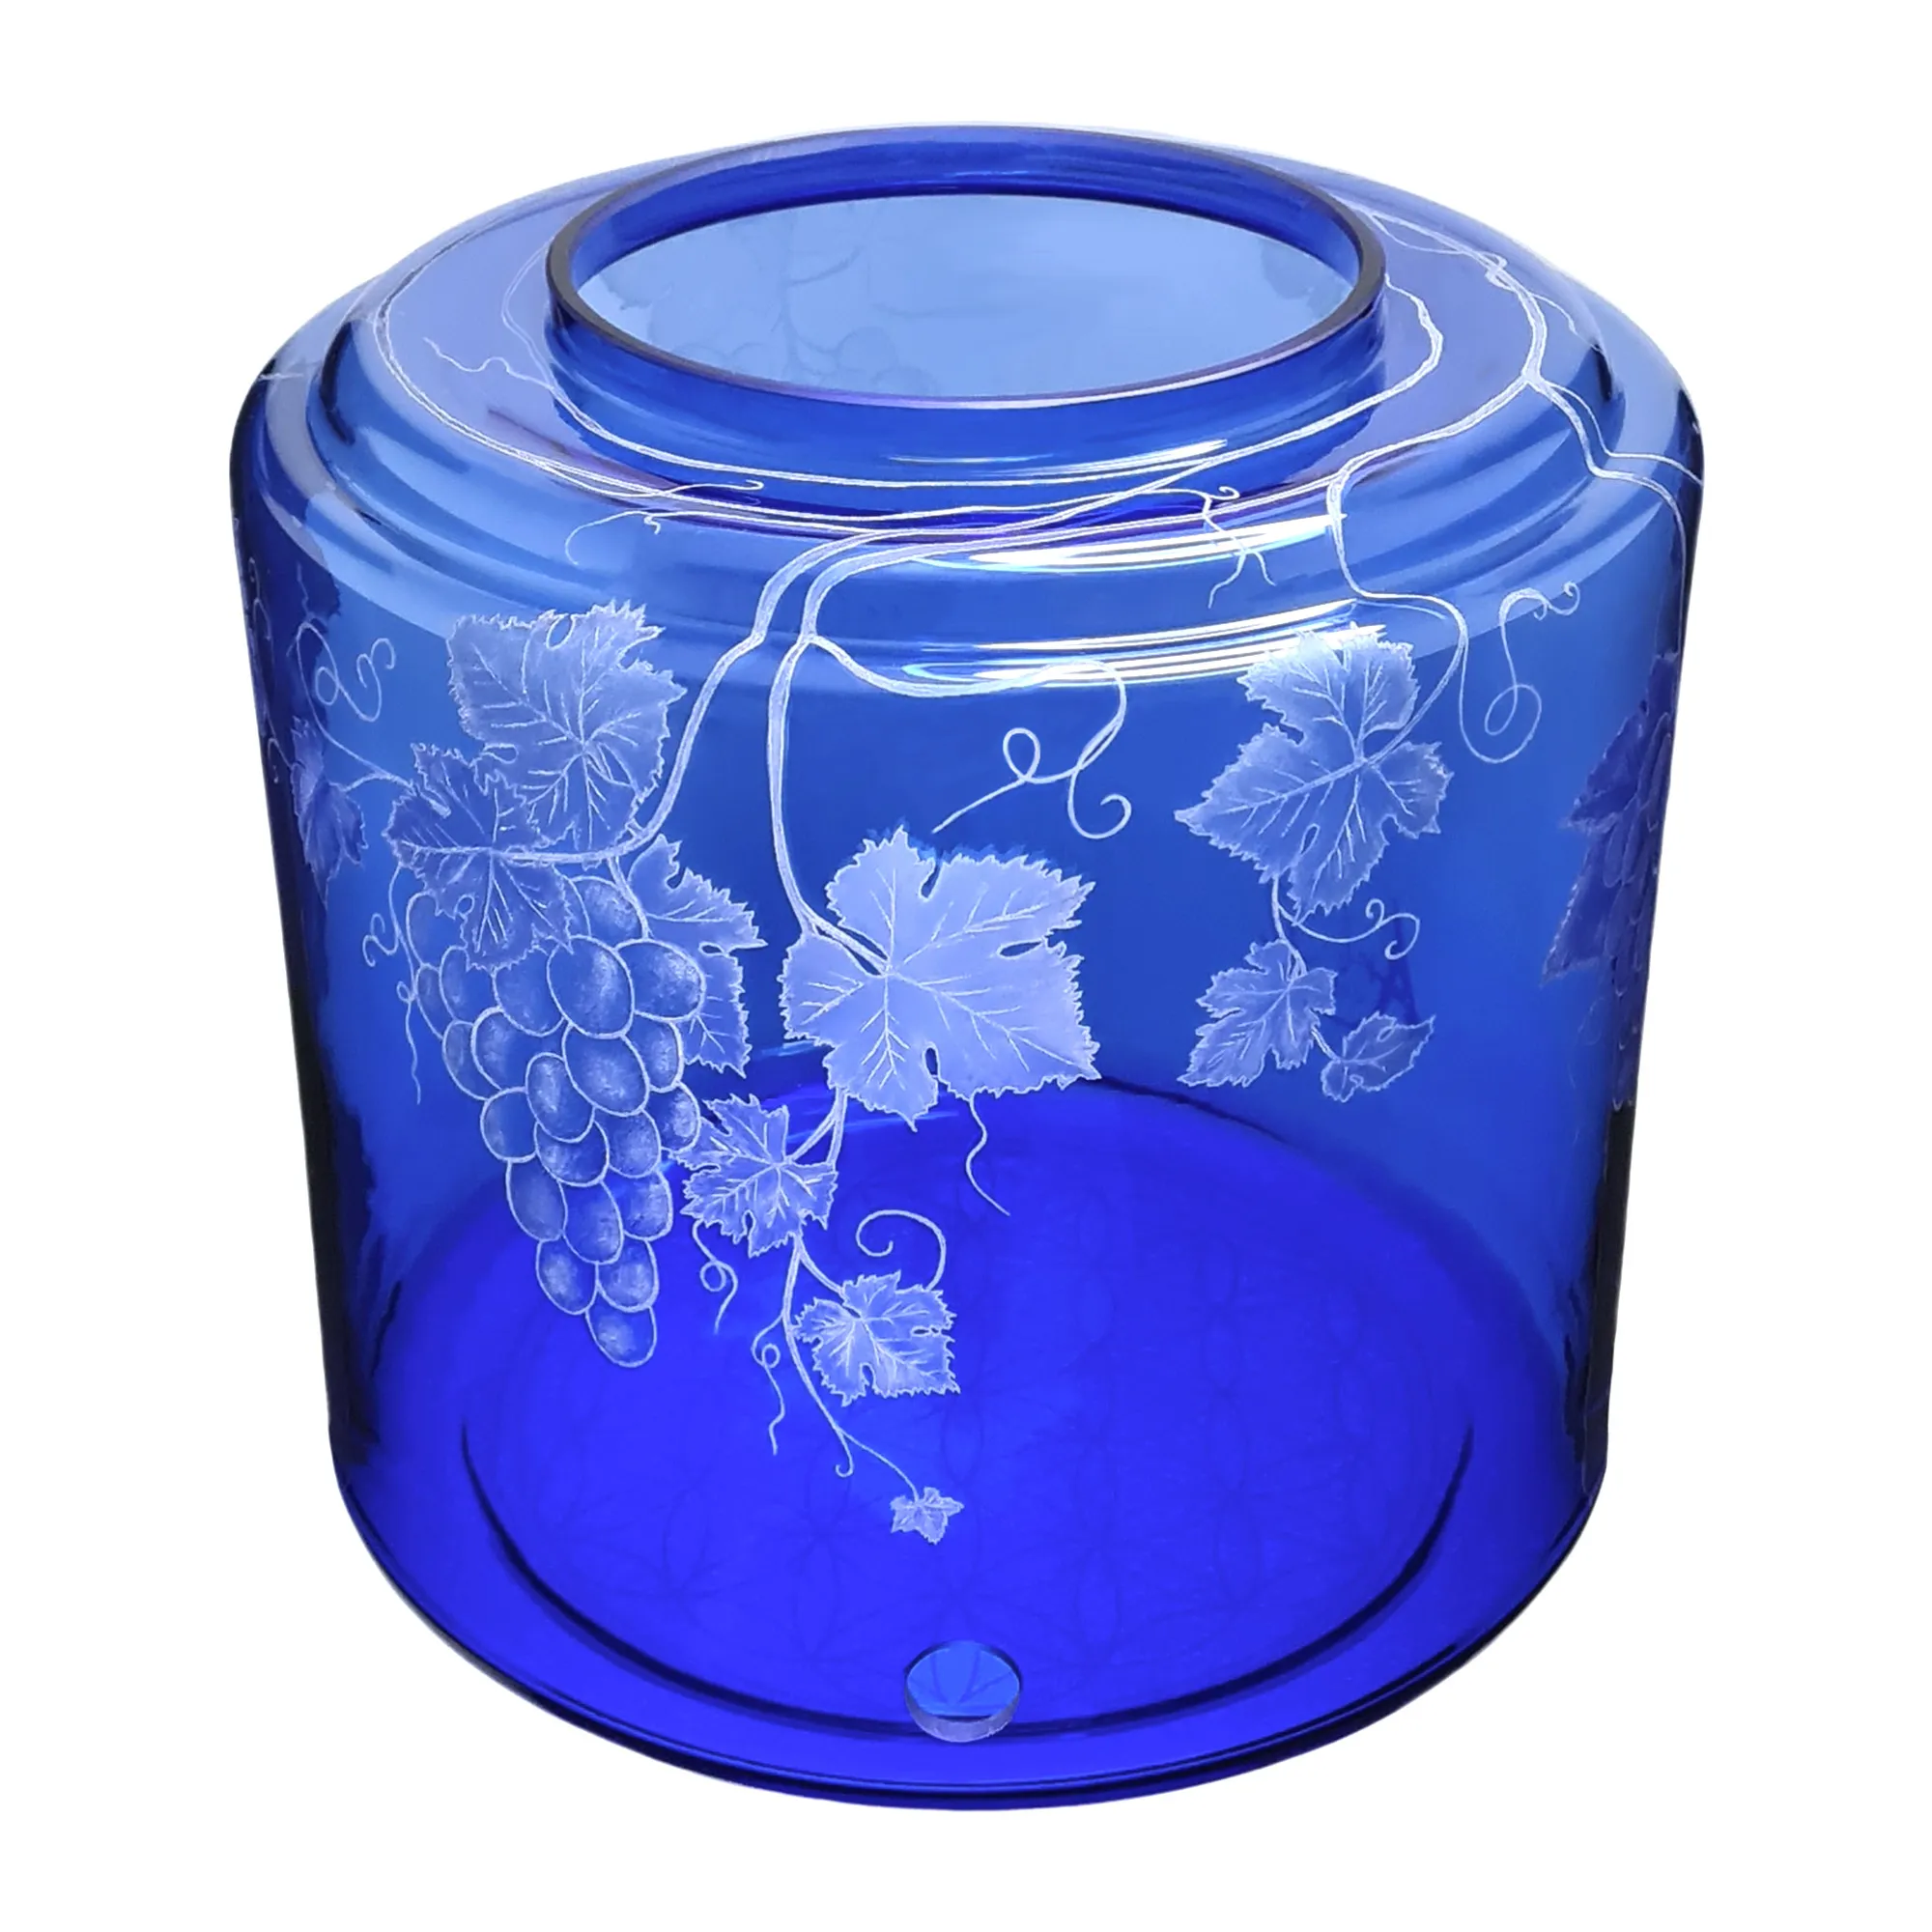 Vorratstank für einen Acala Wasserfilter Mini mit einer Handgravur. Die Gravur zeigt, auf blauem Glas, Traubenranken und Blätter.Ansicht von vorne,oben.